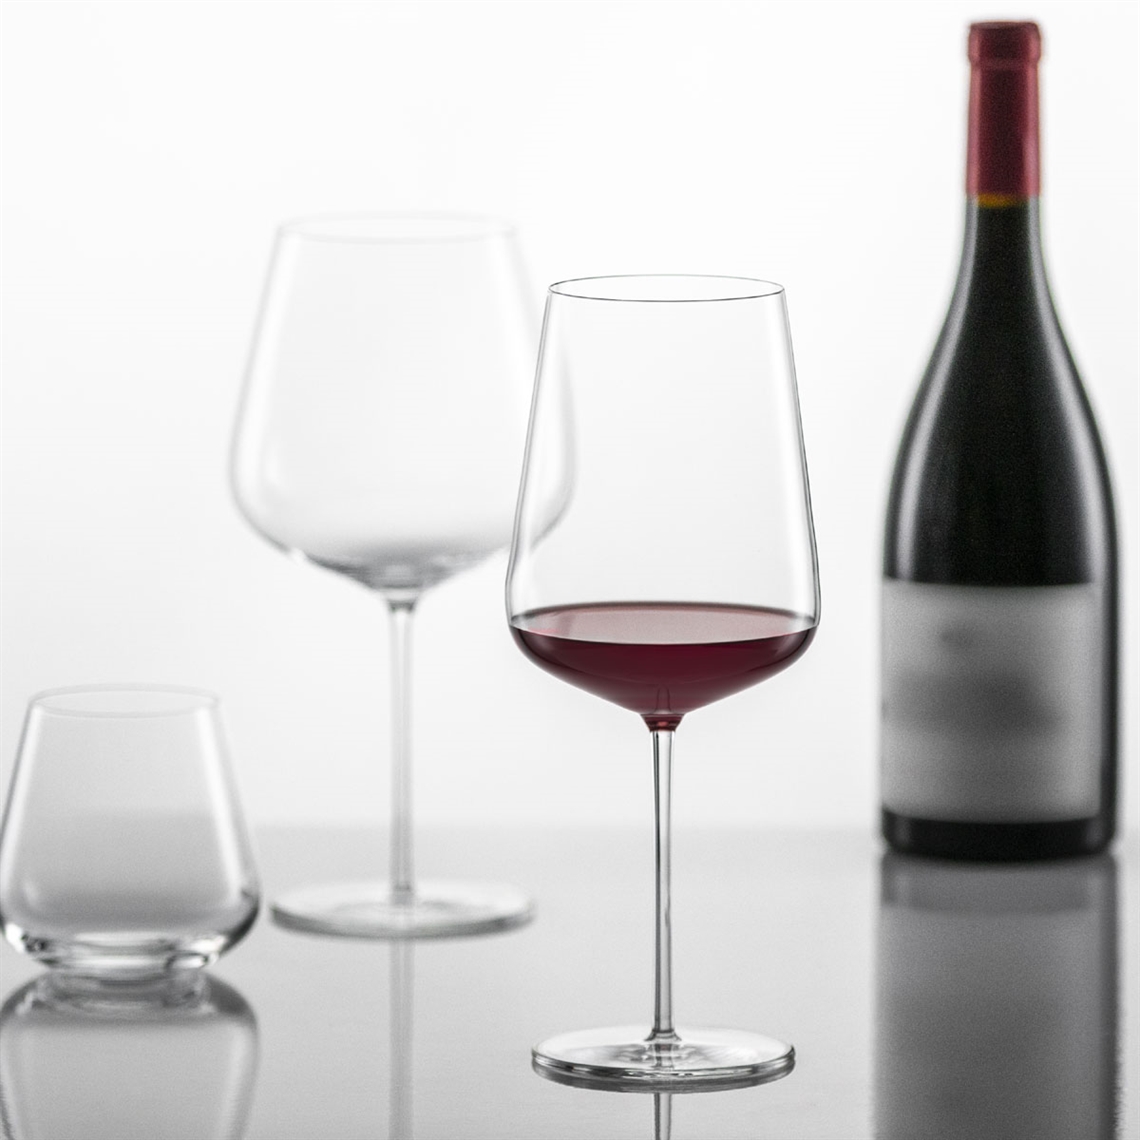 Schott Zwiesel Vervino Bordeaux Glass - Set of 2